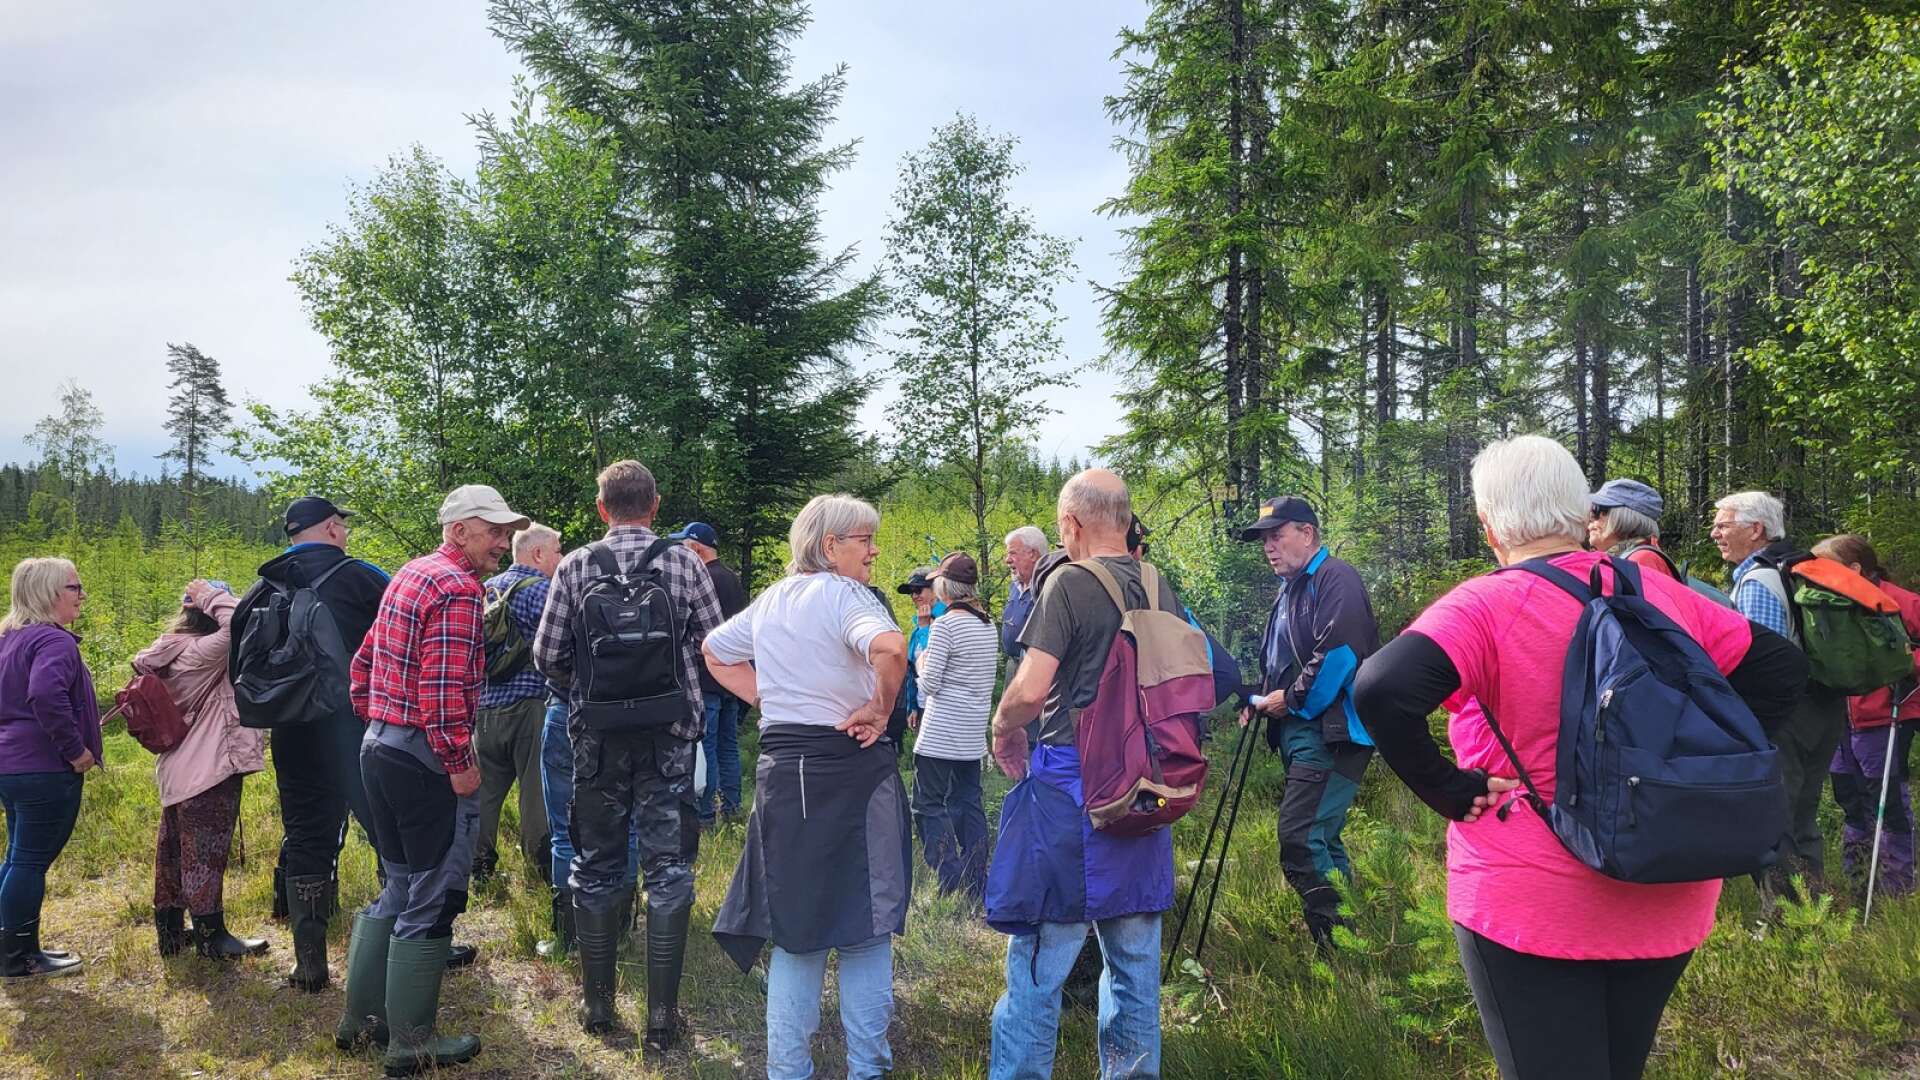 Premiärvandring av Tannfallsleden ägde rum lördagen den 15 juli. Ledens skapare Leif Olsson var mycket nöjd och glad över uppslutningen som bestod av 40 kulturtörstande vandrare. 